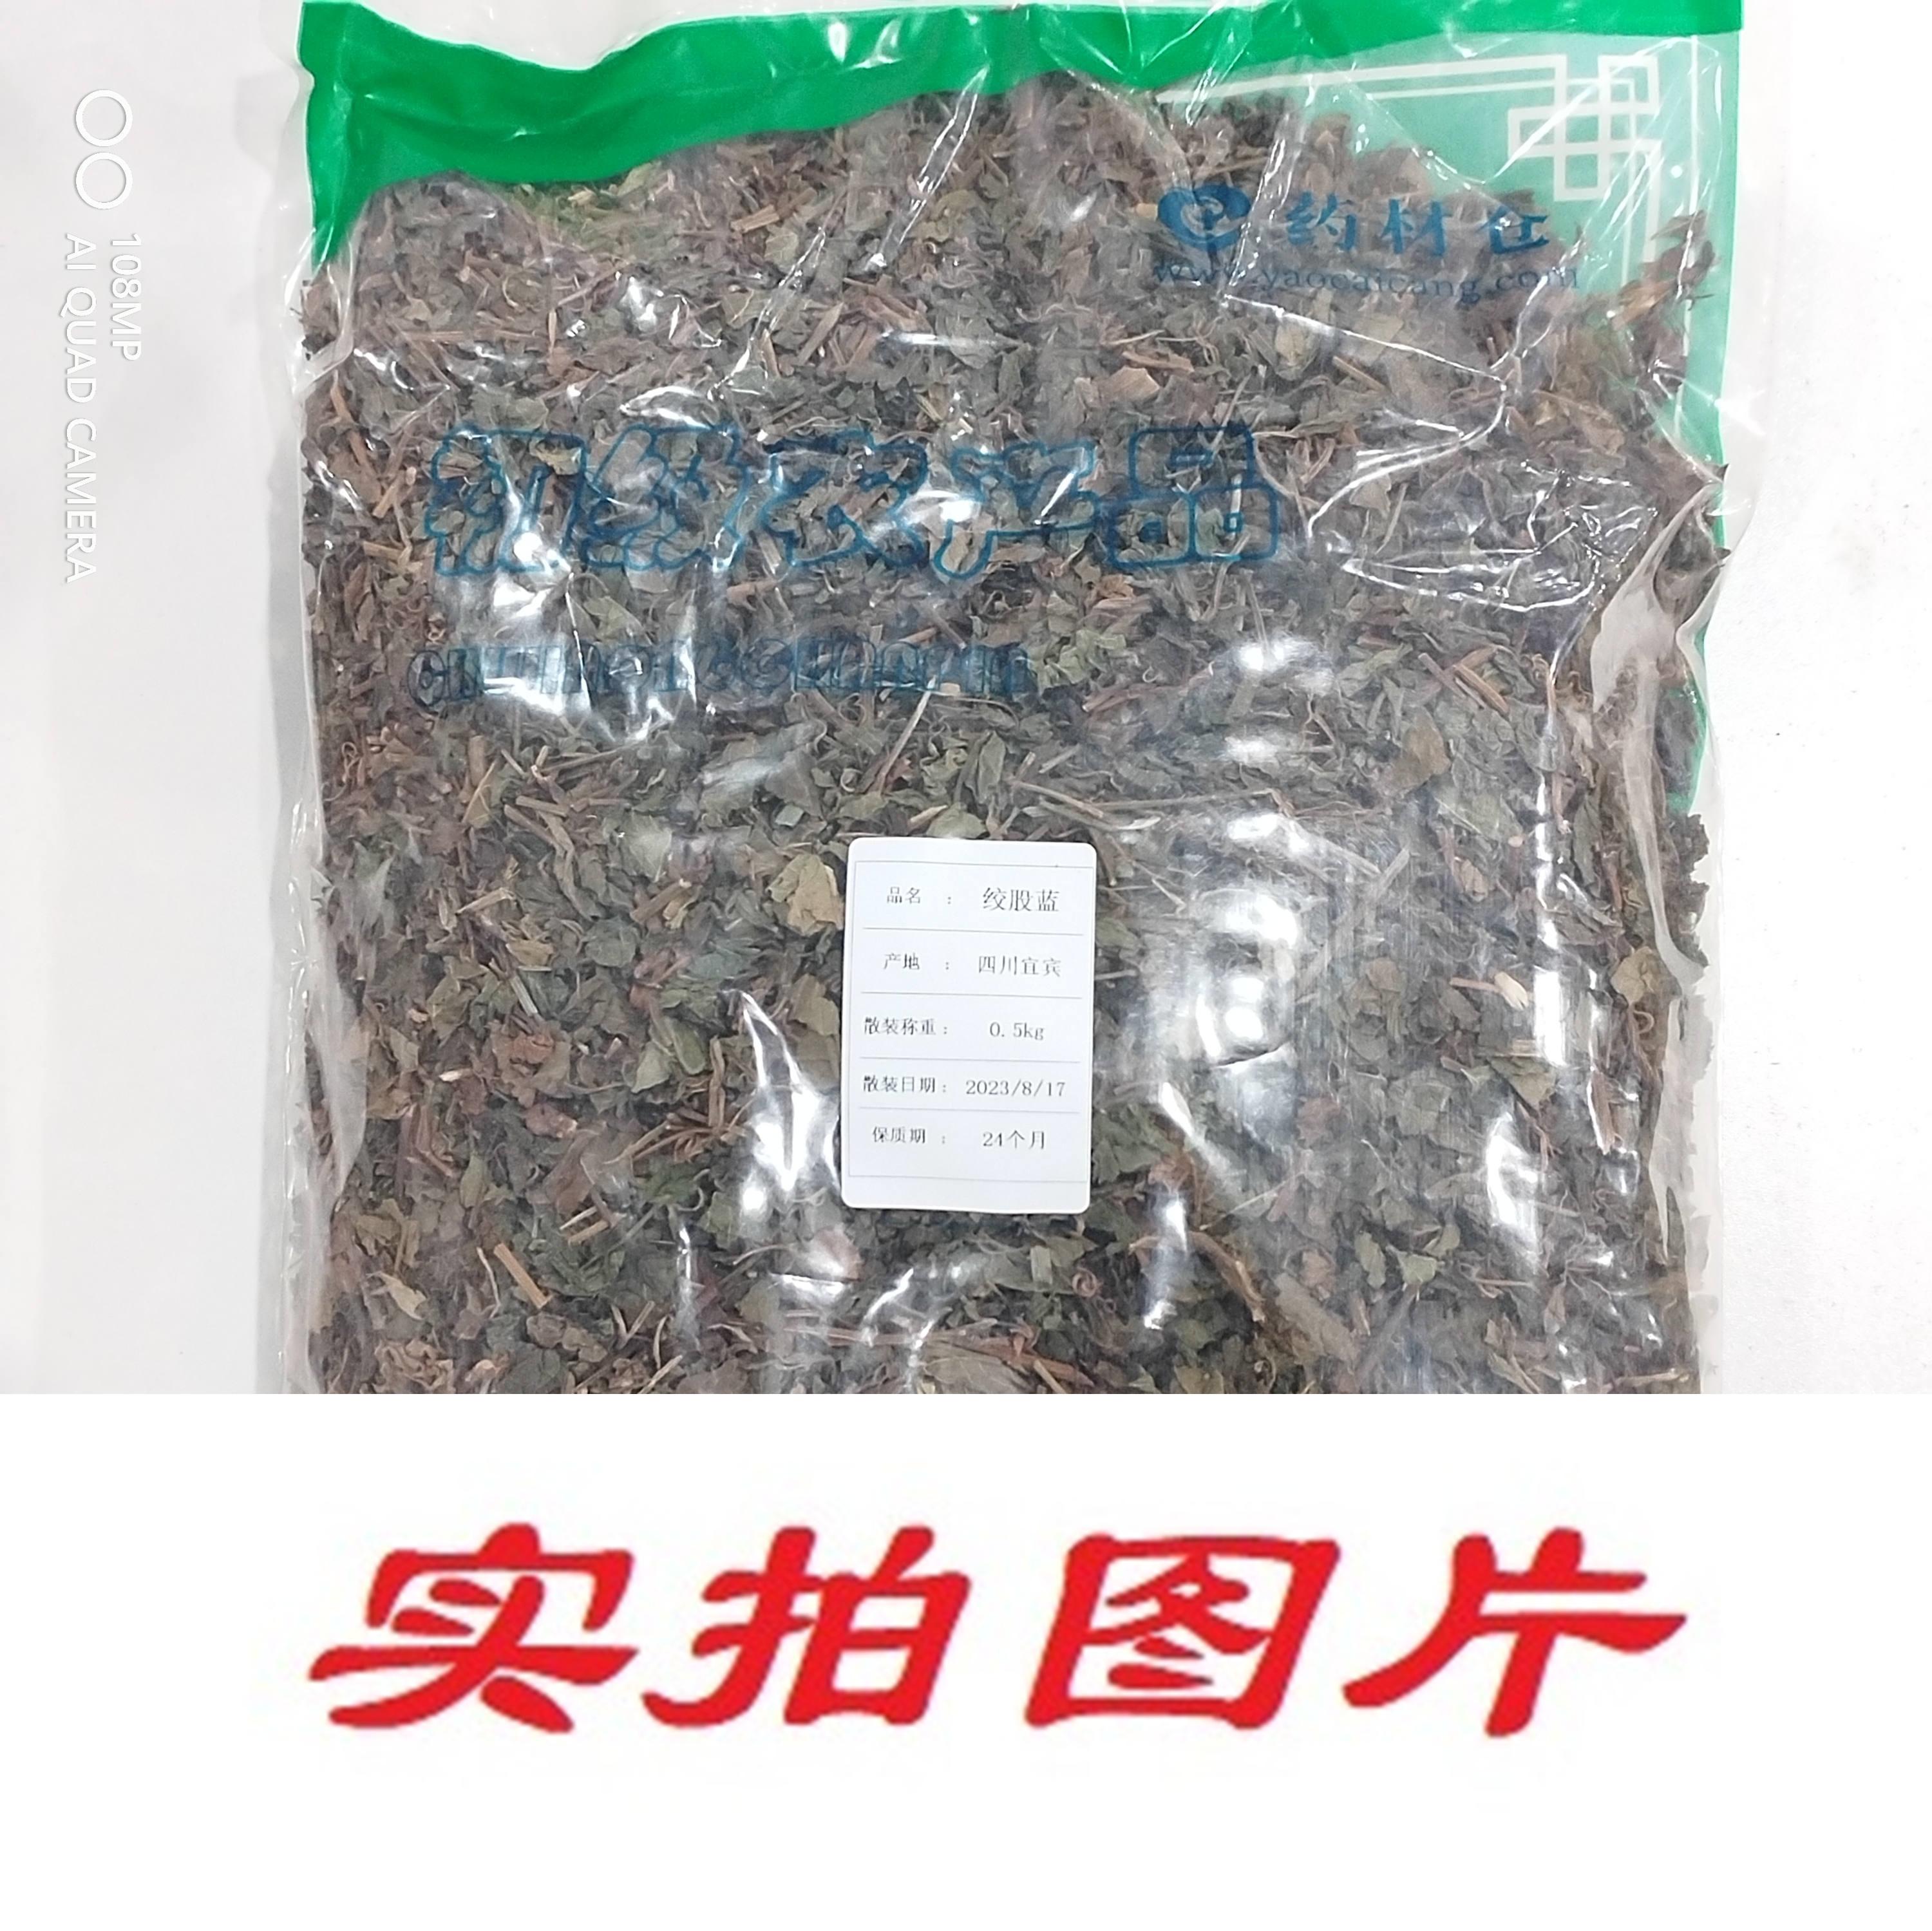 【】绞股蓝0.5kg-农副产品